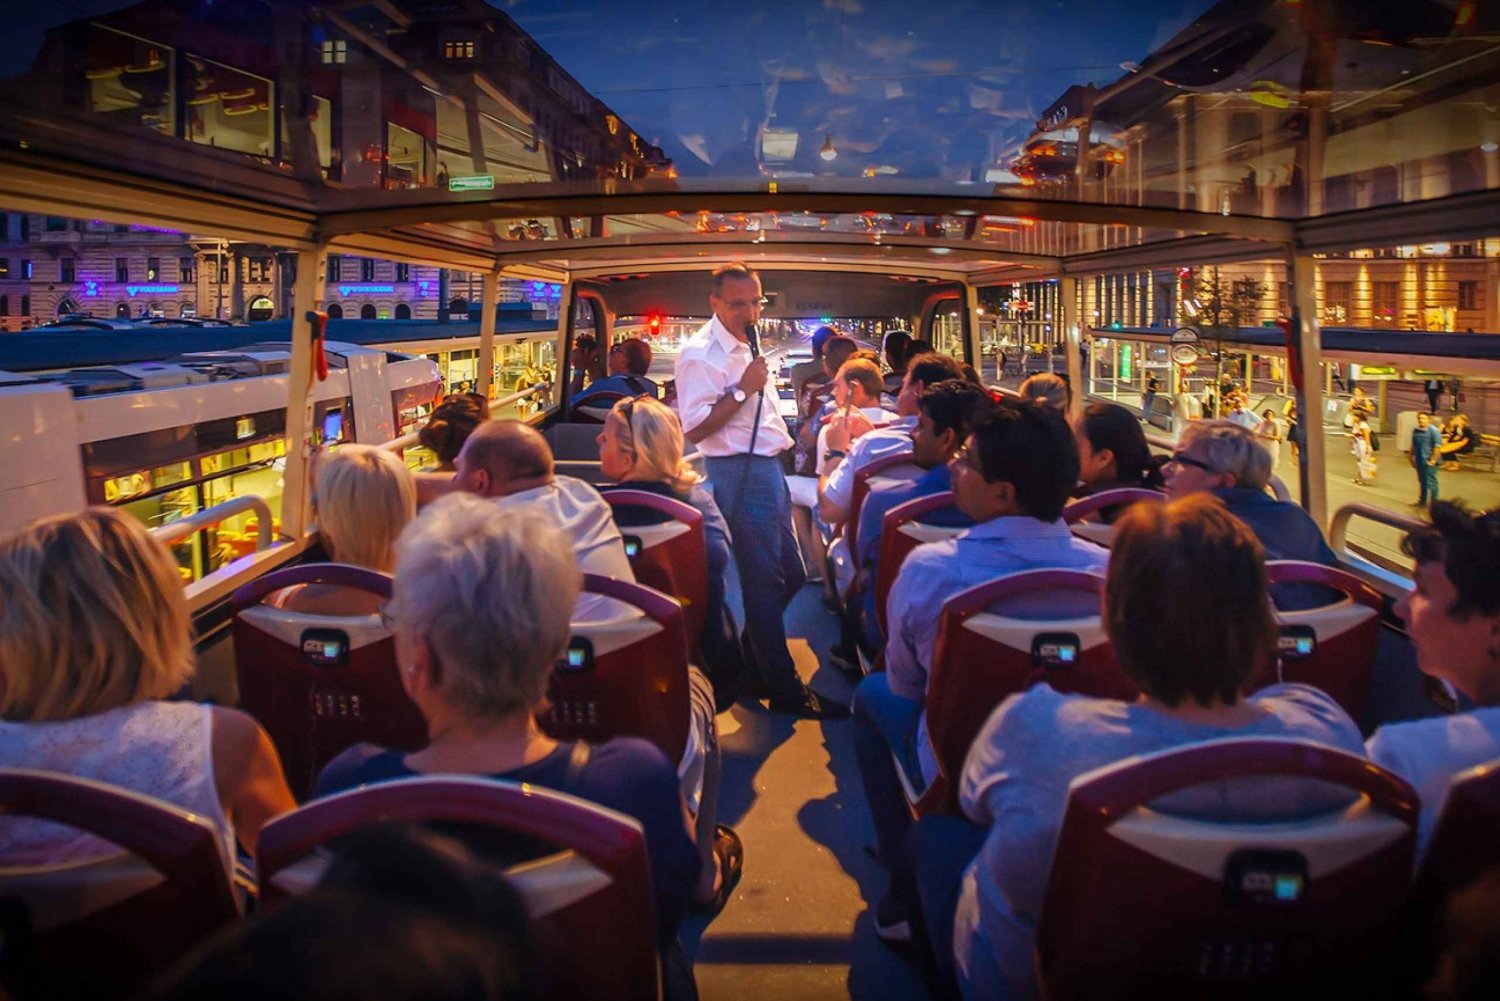 Berlín: Tour turístico nocturno en autobús con comentarios en directo